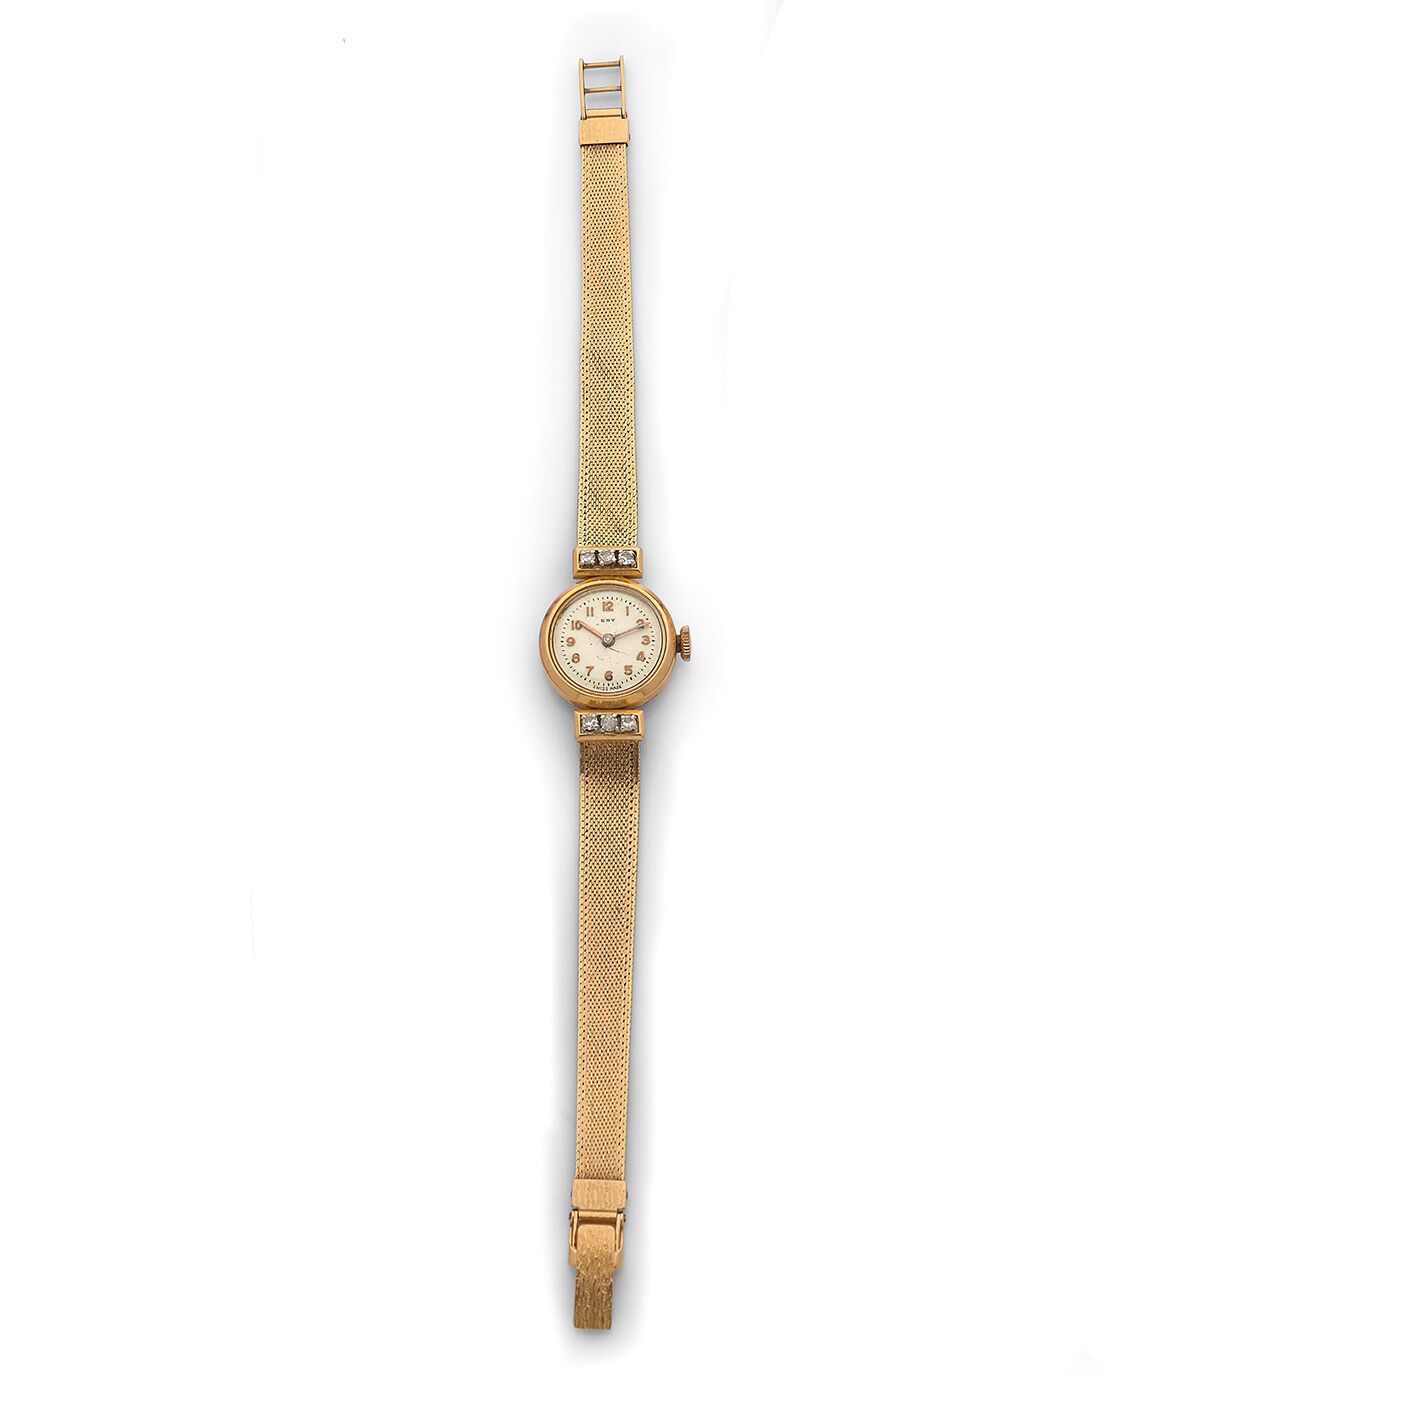 ERY ERY
Reloj de señora en oro de 18 quilates (750 milésimas), hacia 1950, esfer&hellip;